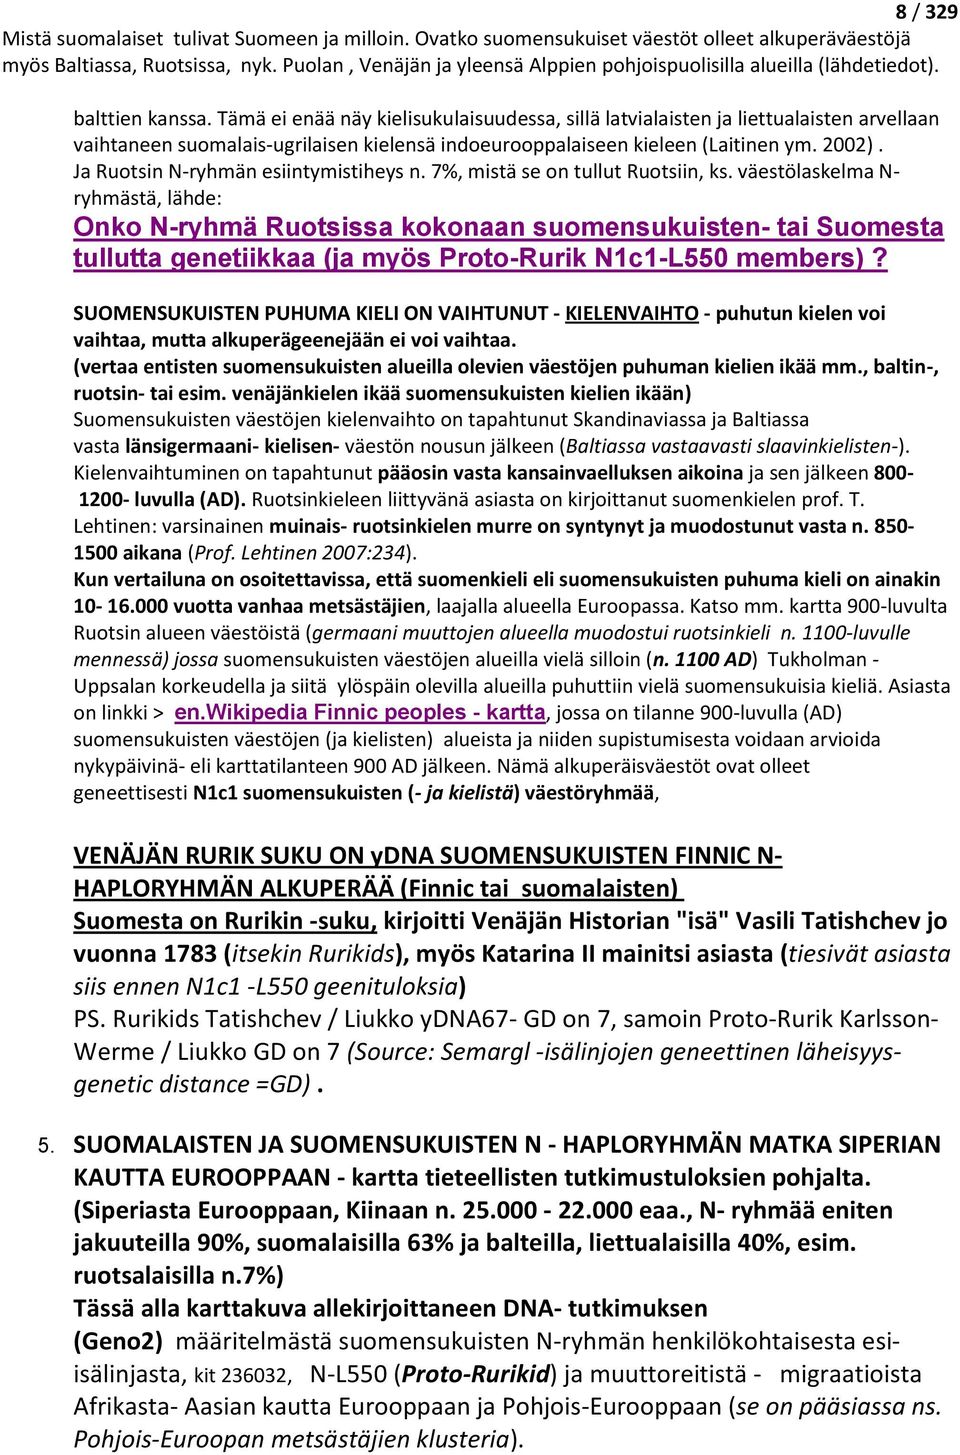 väestölaskelma N- ryhmästä, lähde: Onko N-ryhmä Ruotsissa kokonaan suomensukuisten- tai Suomesta tullutta genetiikkaa (ja myös Proto-Rurik N1c1-L550 members)?